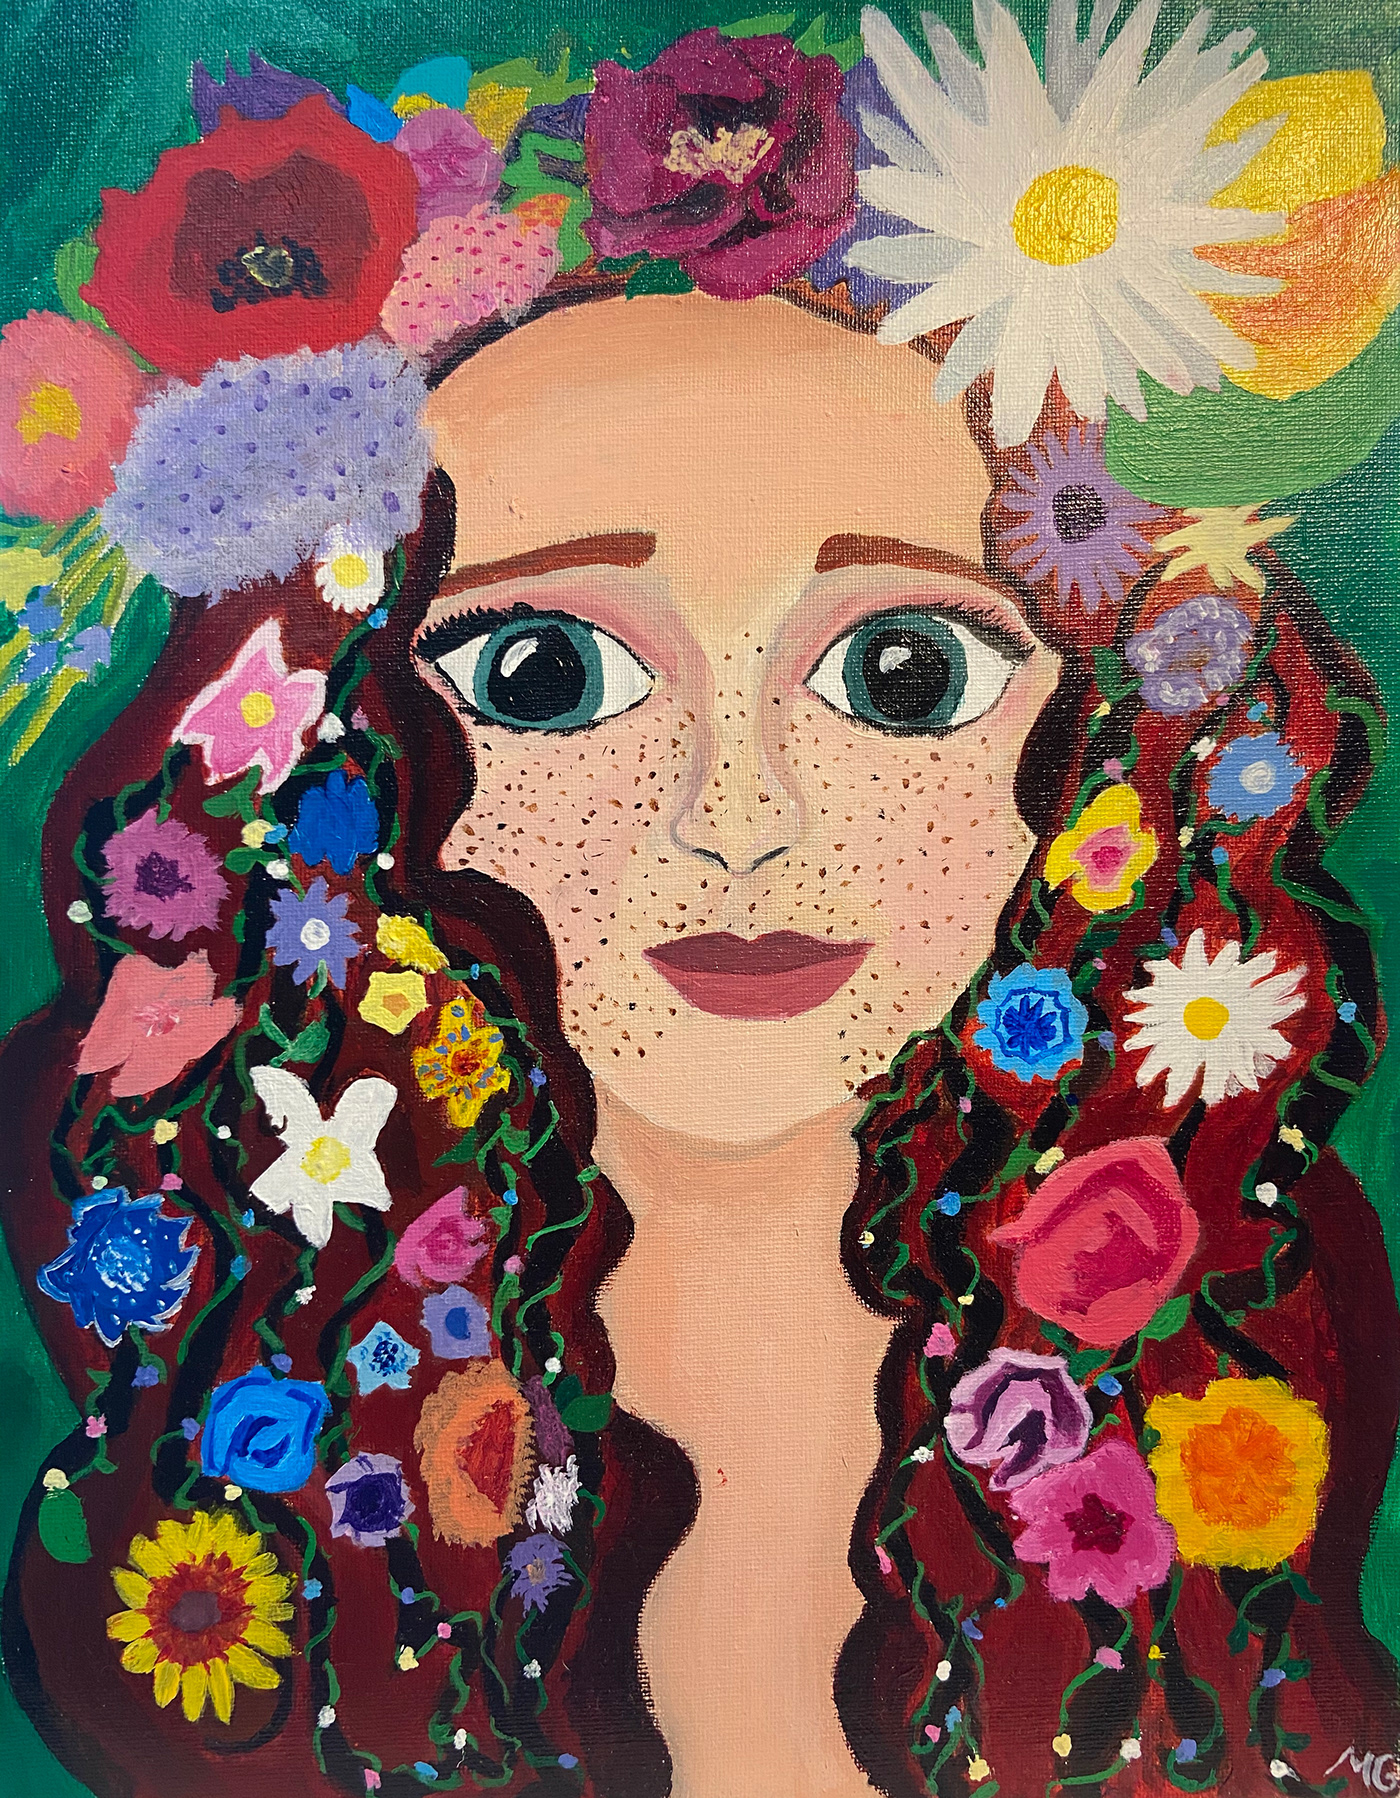 acrylic painting colorful enviornmental Flowers greek mythology mythology painting   Persephone stylization portrait TRADITIONAL ART